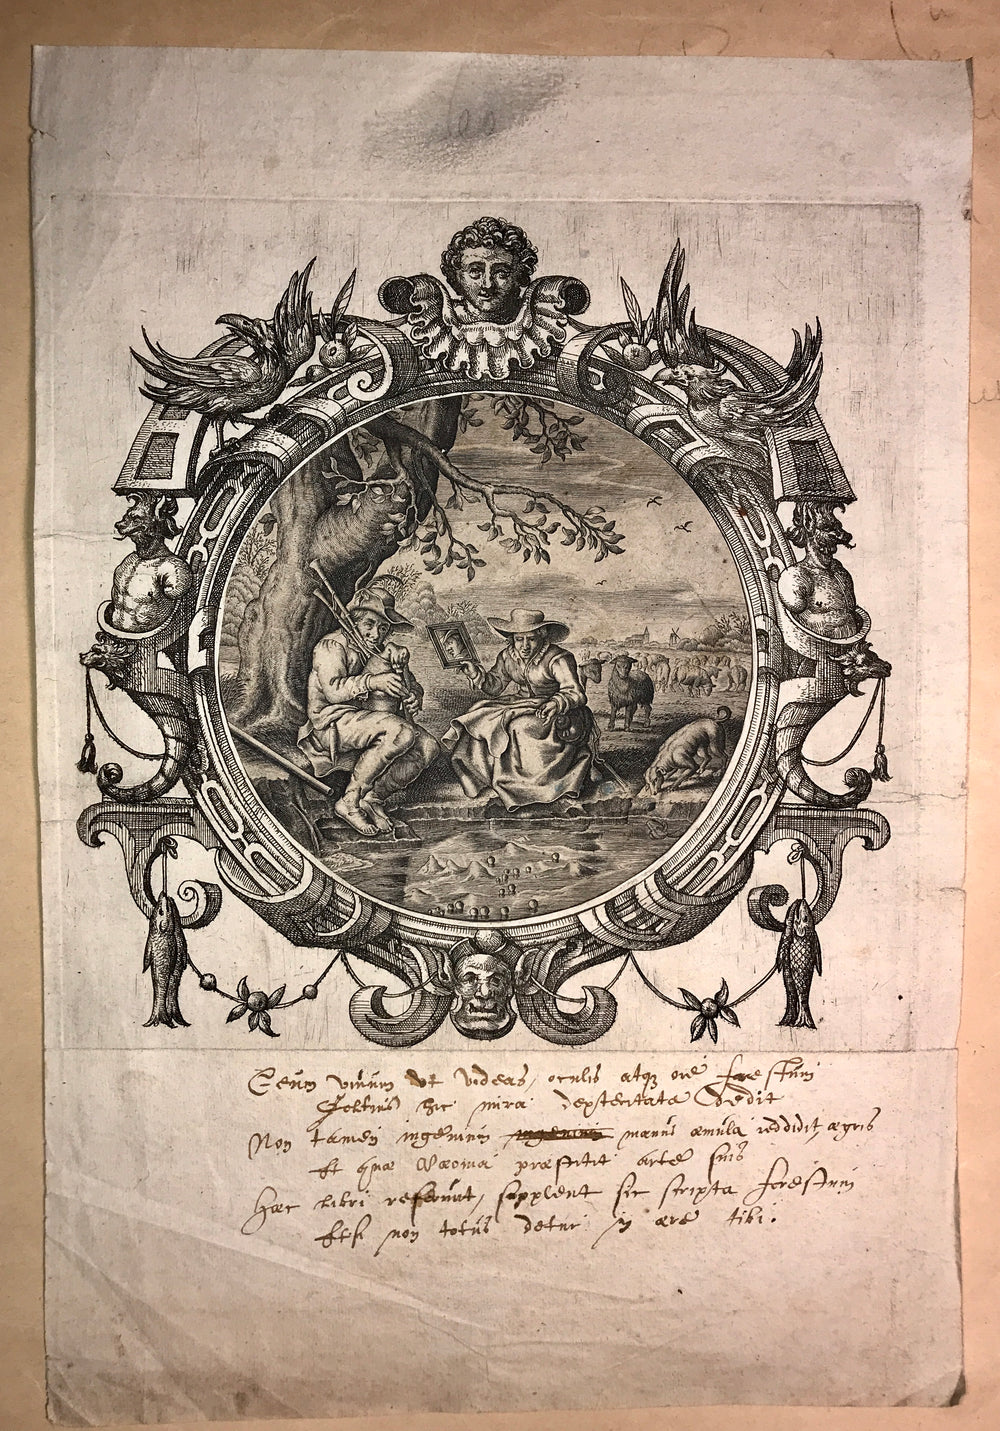 Adriaen Pietersz. van de Venne DELFT 1589 - 1662 THE HAGUE